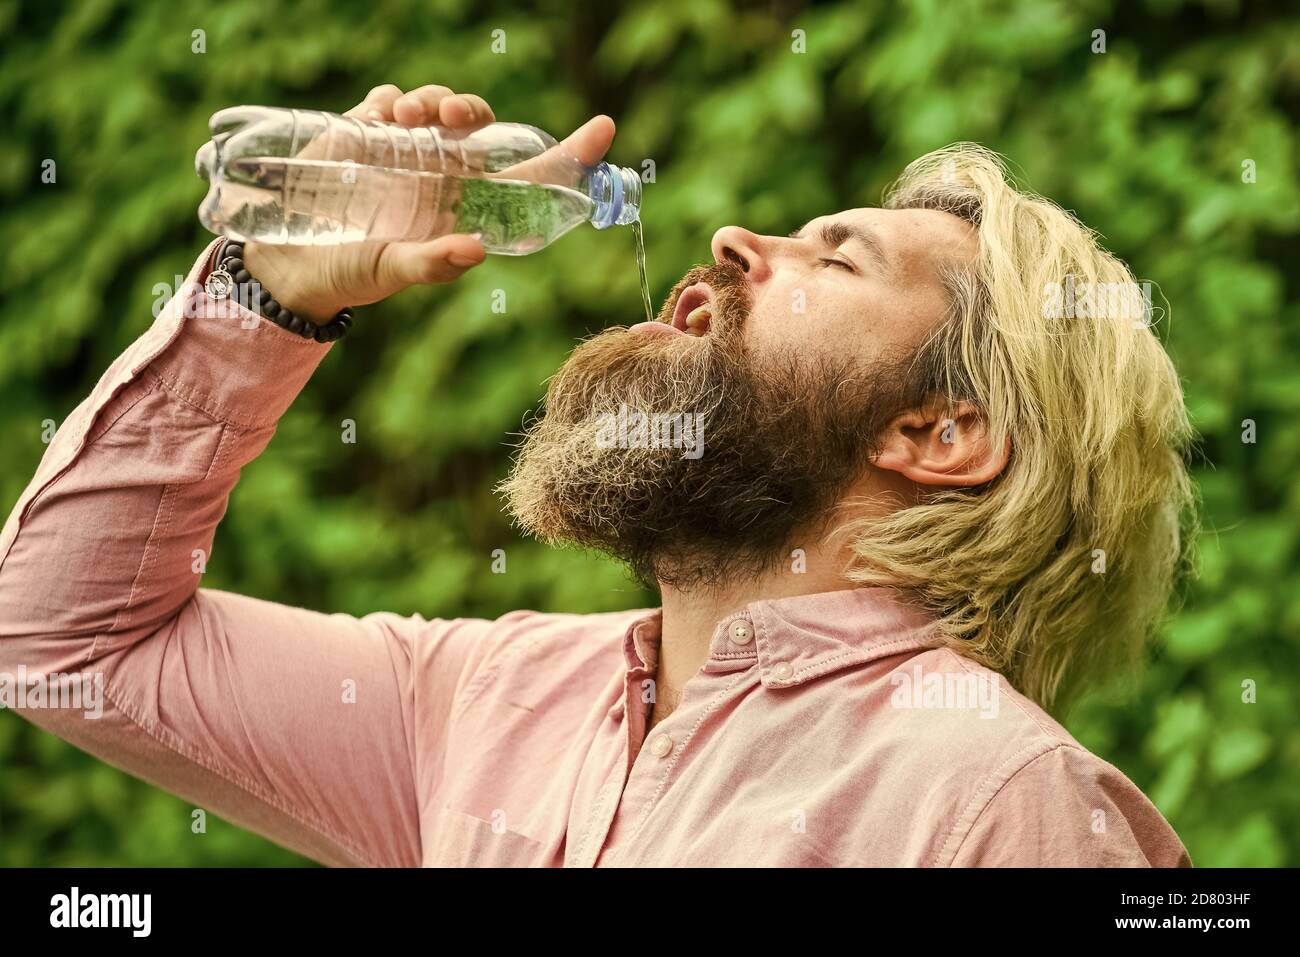 Équilibre de l'eau. Homme barbu touriste eau potable bouteille plastique nature fond. Chaleur estivale. Boire de l'eau claire. Un gars assoiffé qui boit de l'eau en bouteille Un mode de vie sain. Sécurité et santé. Banque D'Images